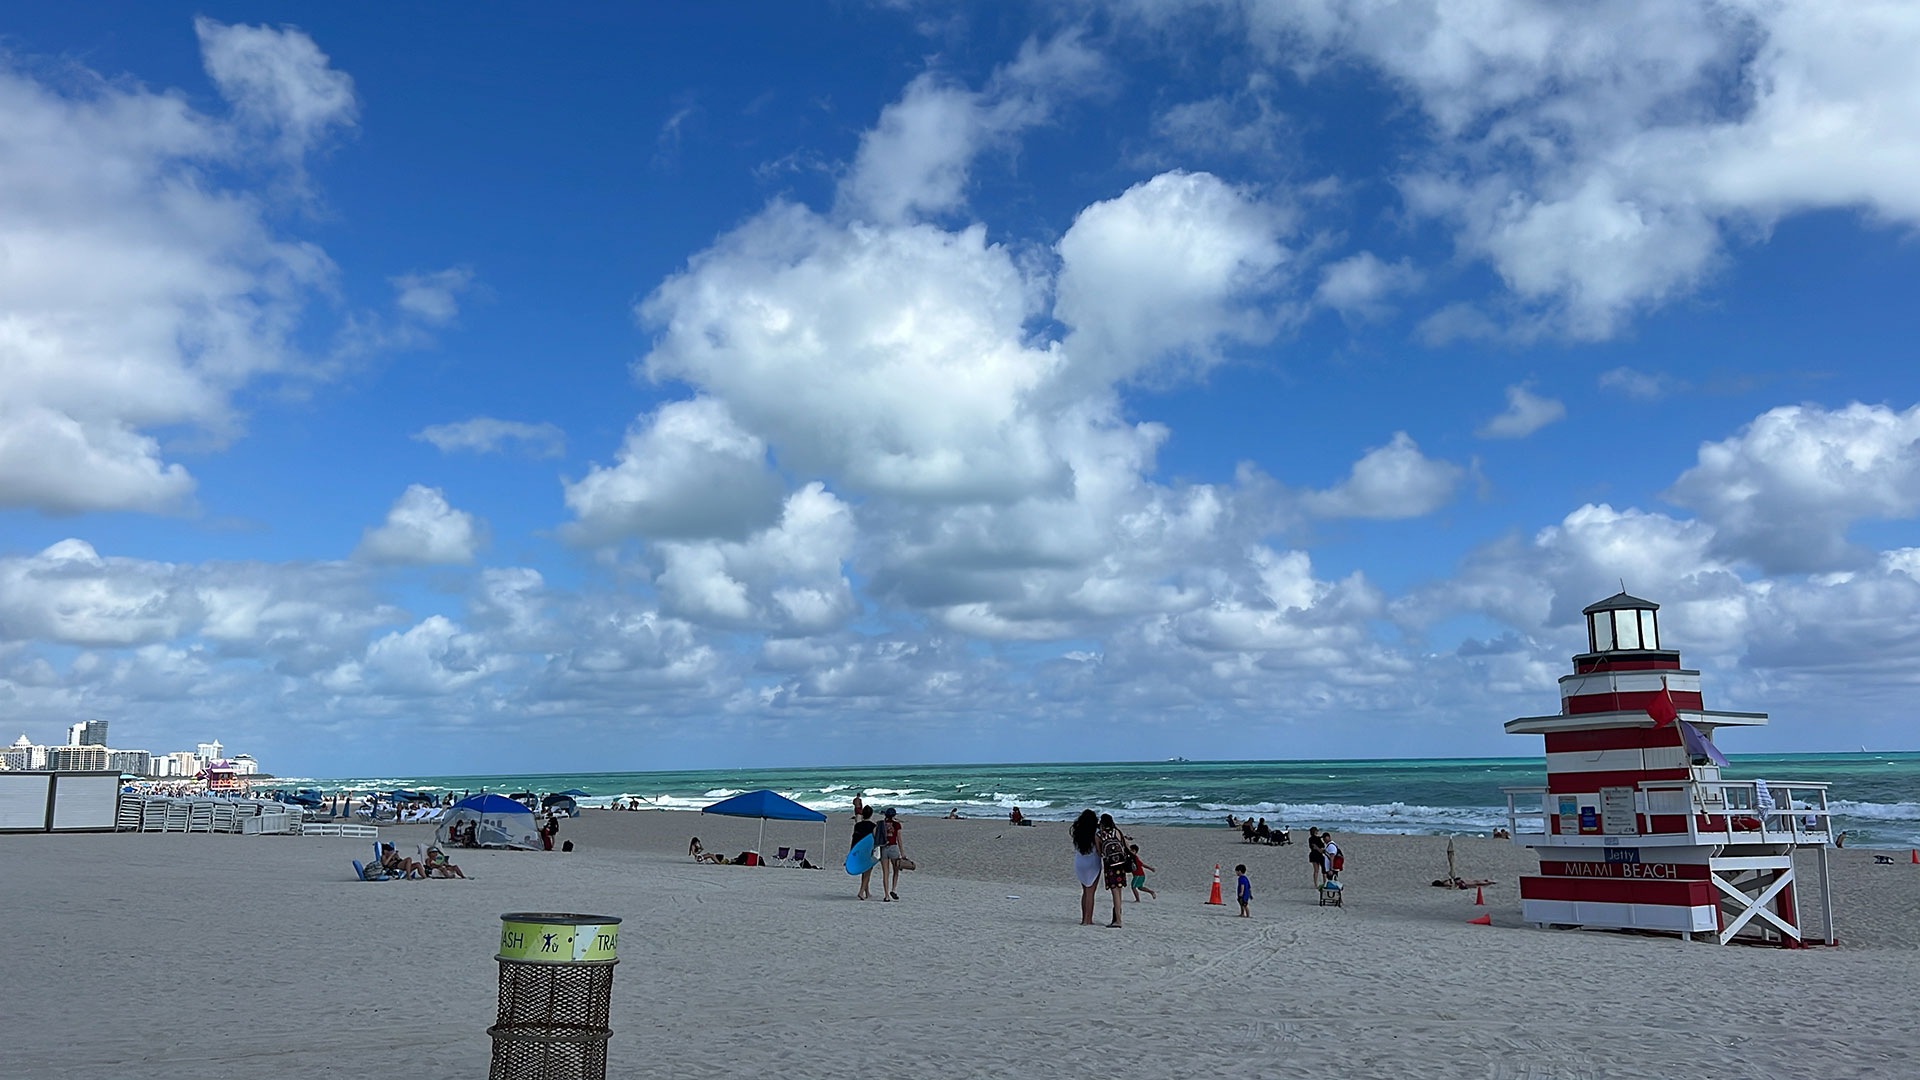 South Pointe es una playa en el sur de Miami Beach y es conocida por sus vistas panorámicas de la bahía de Biscayne, sus amplios espacios de arena  (Crédito: Opy Morales)